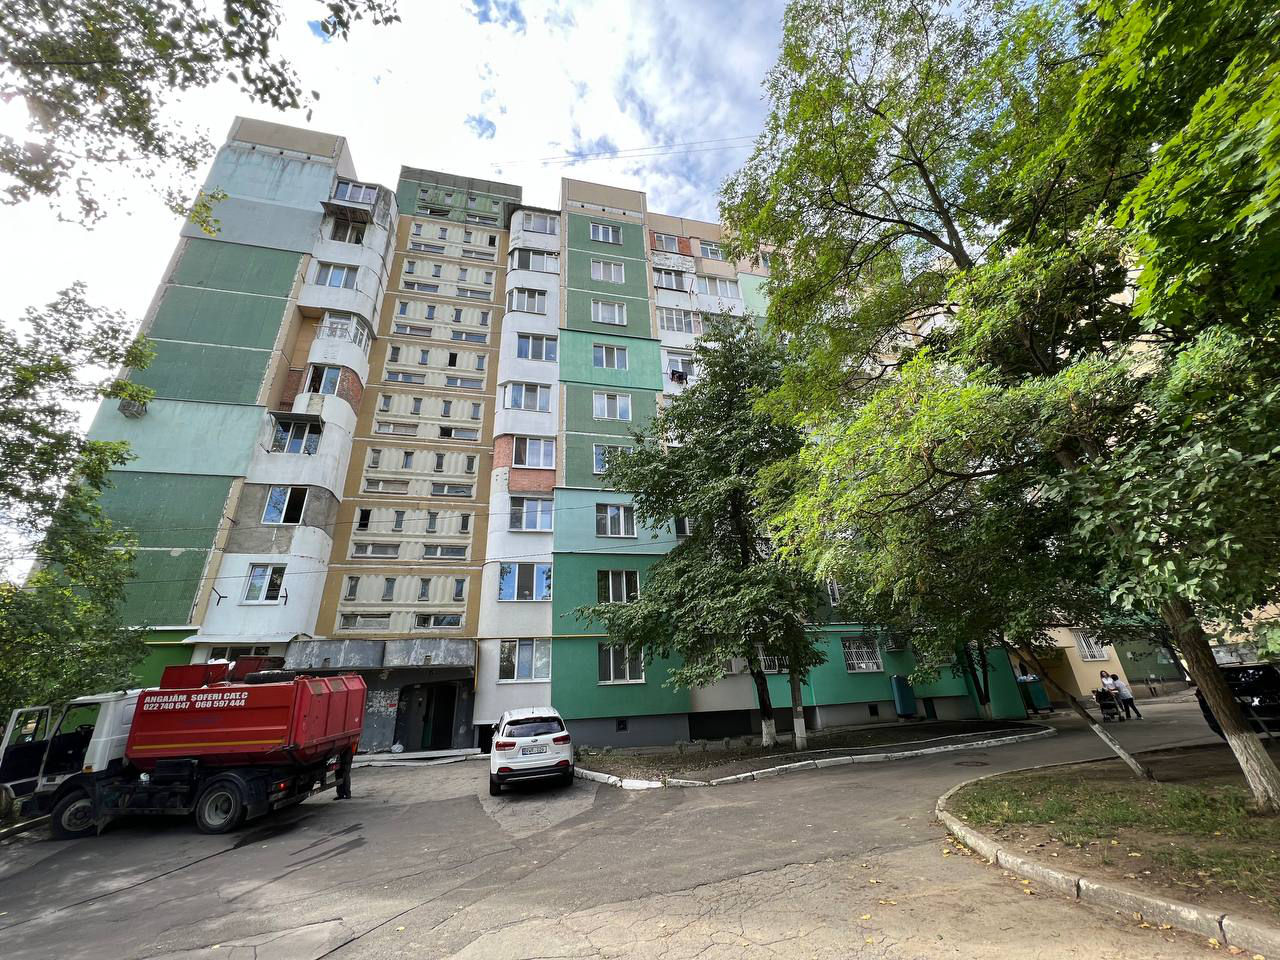 Spre vânzare un apartament cu 2 camere amplasat în sect. Ciocana, str. Milescu Spătaru.